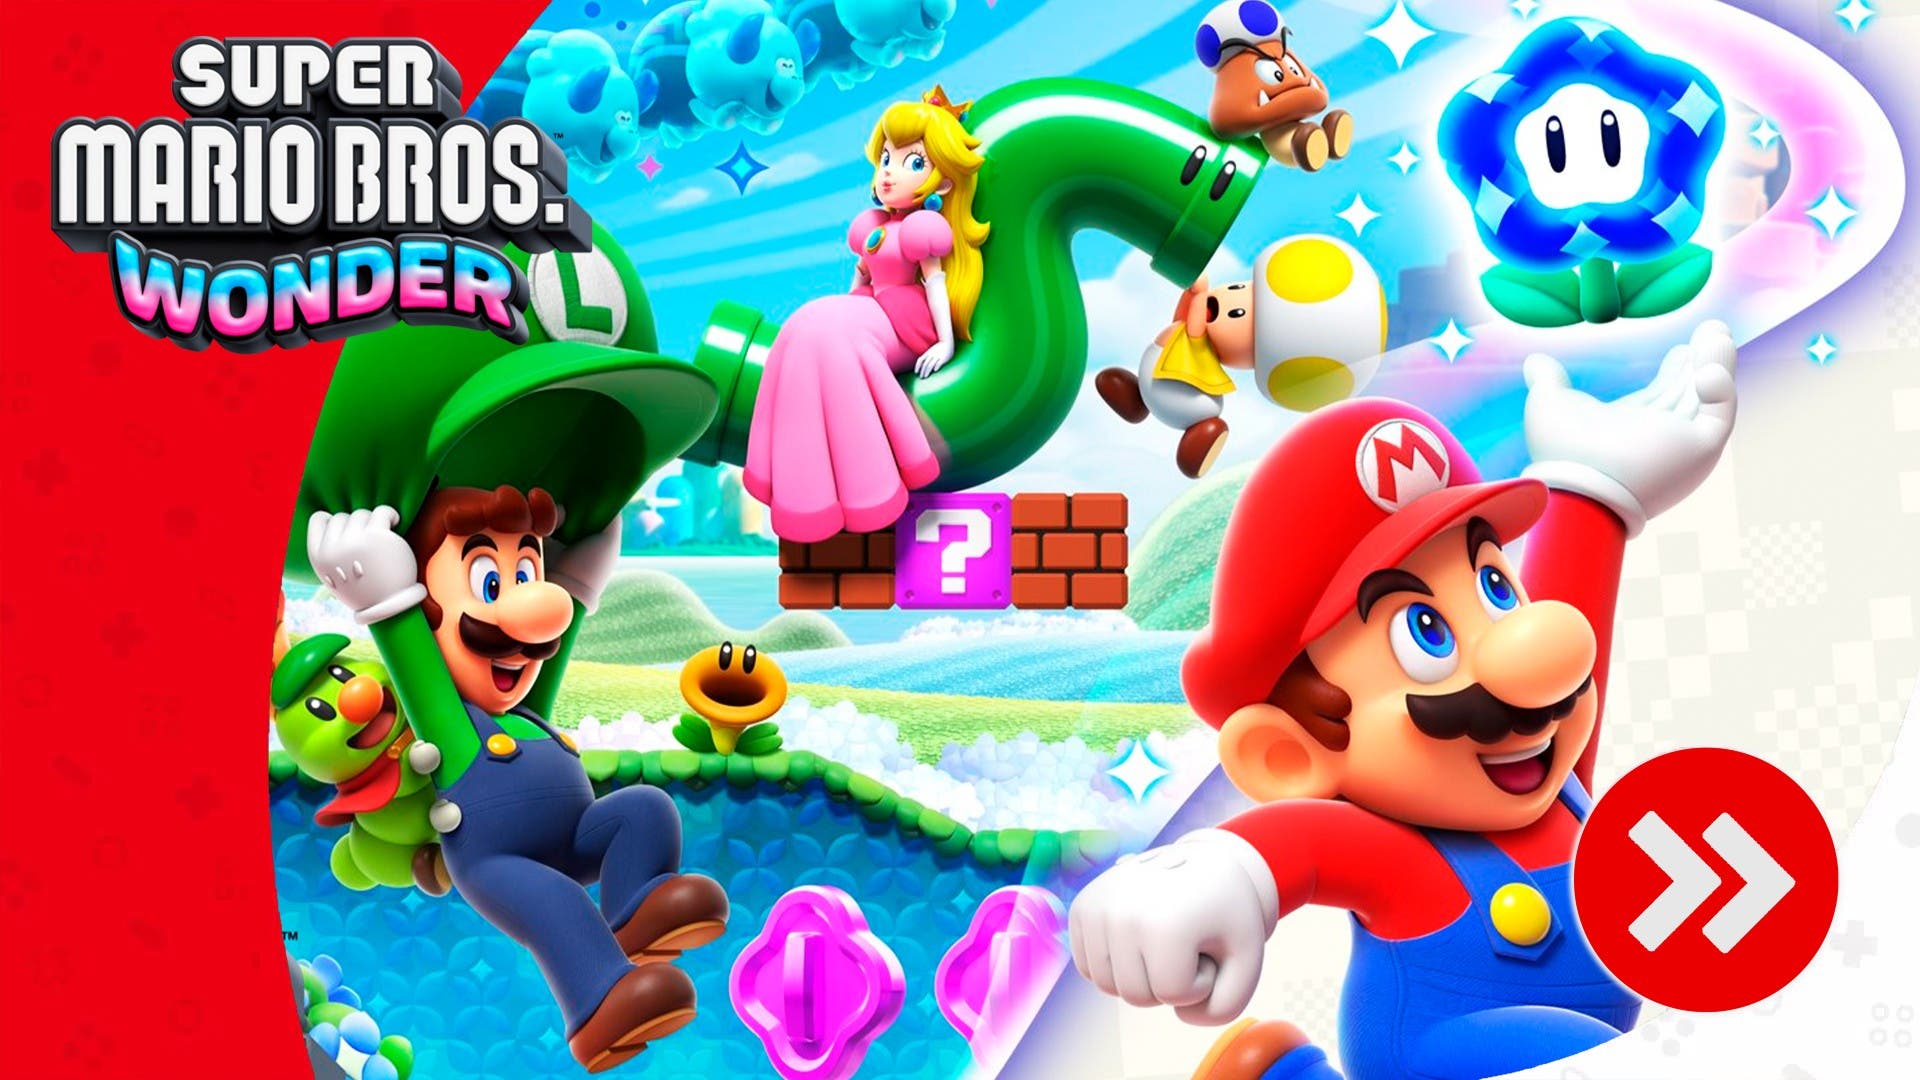 Descubre estos 8 detalles increíbles de Super Mario Bros. Wonder